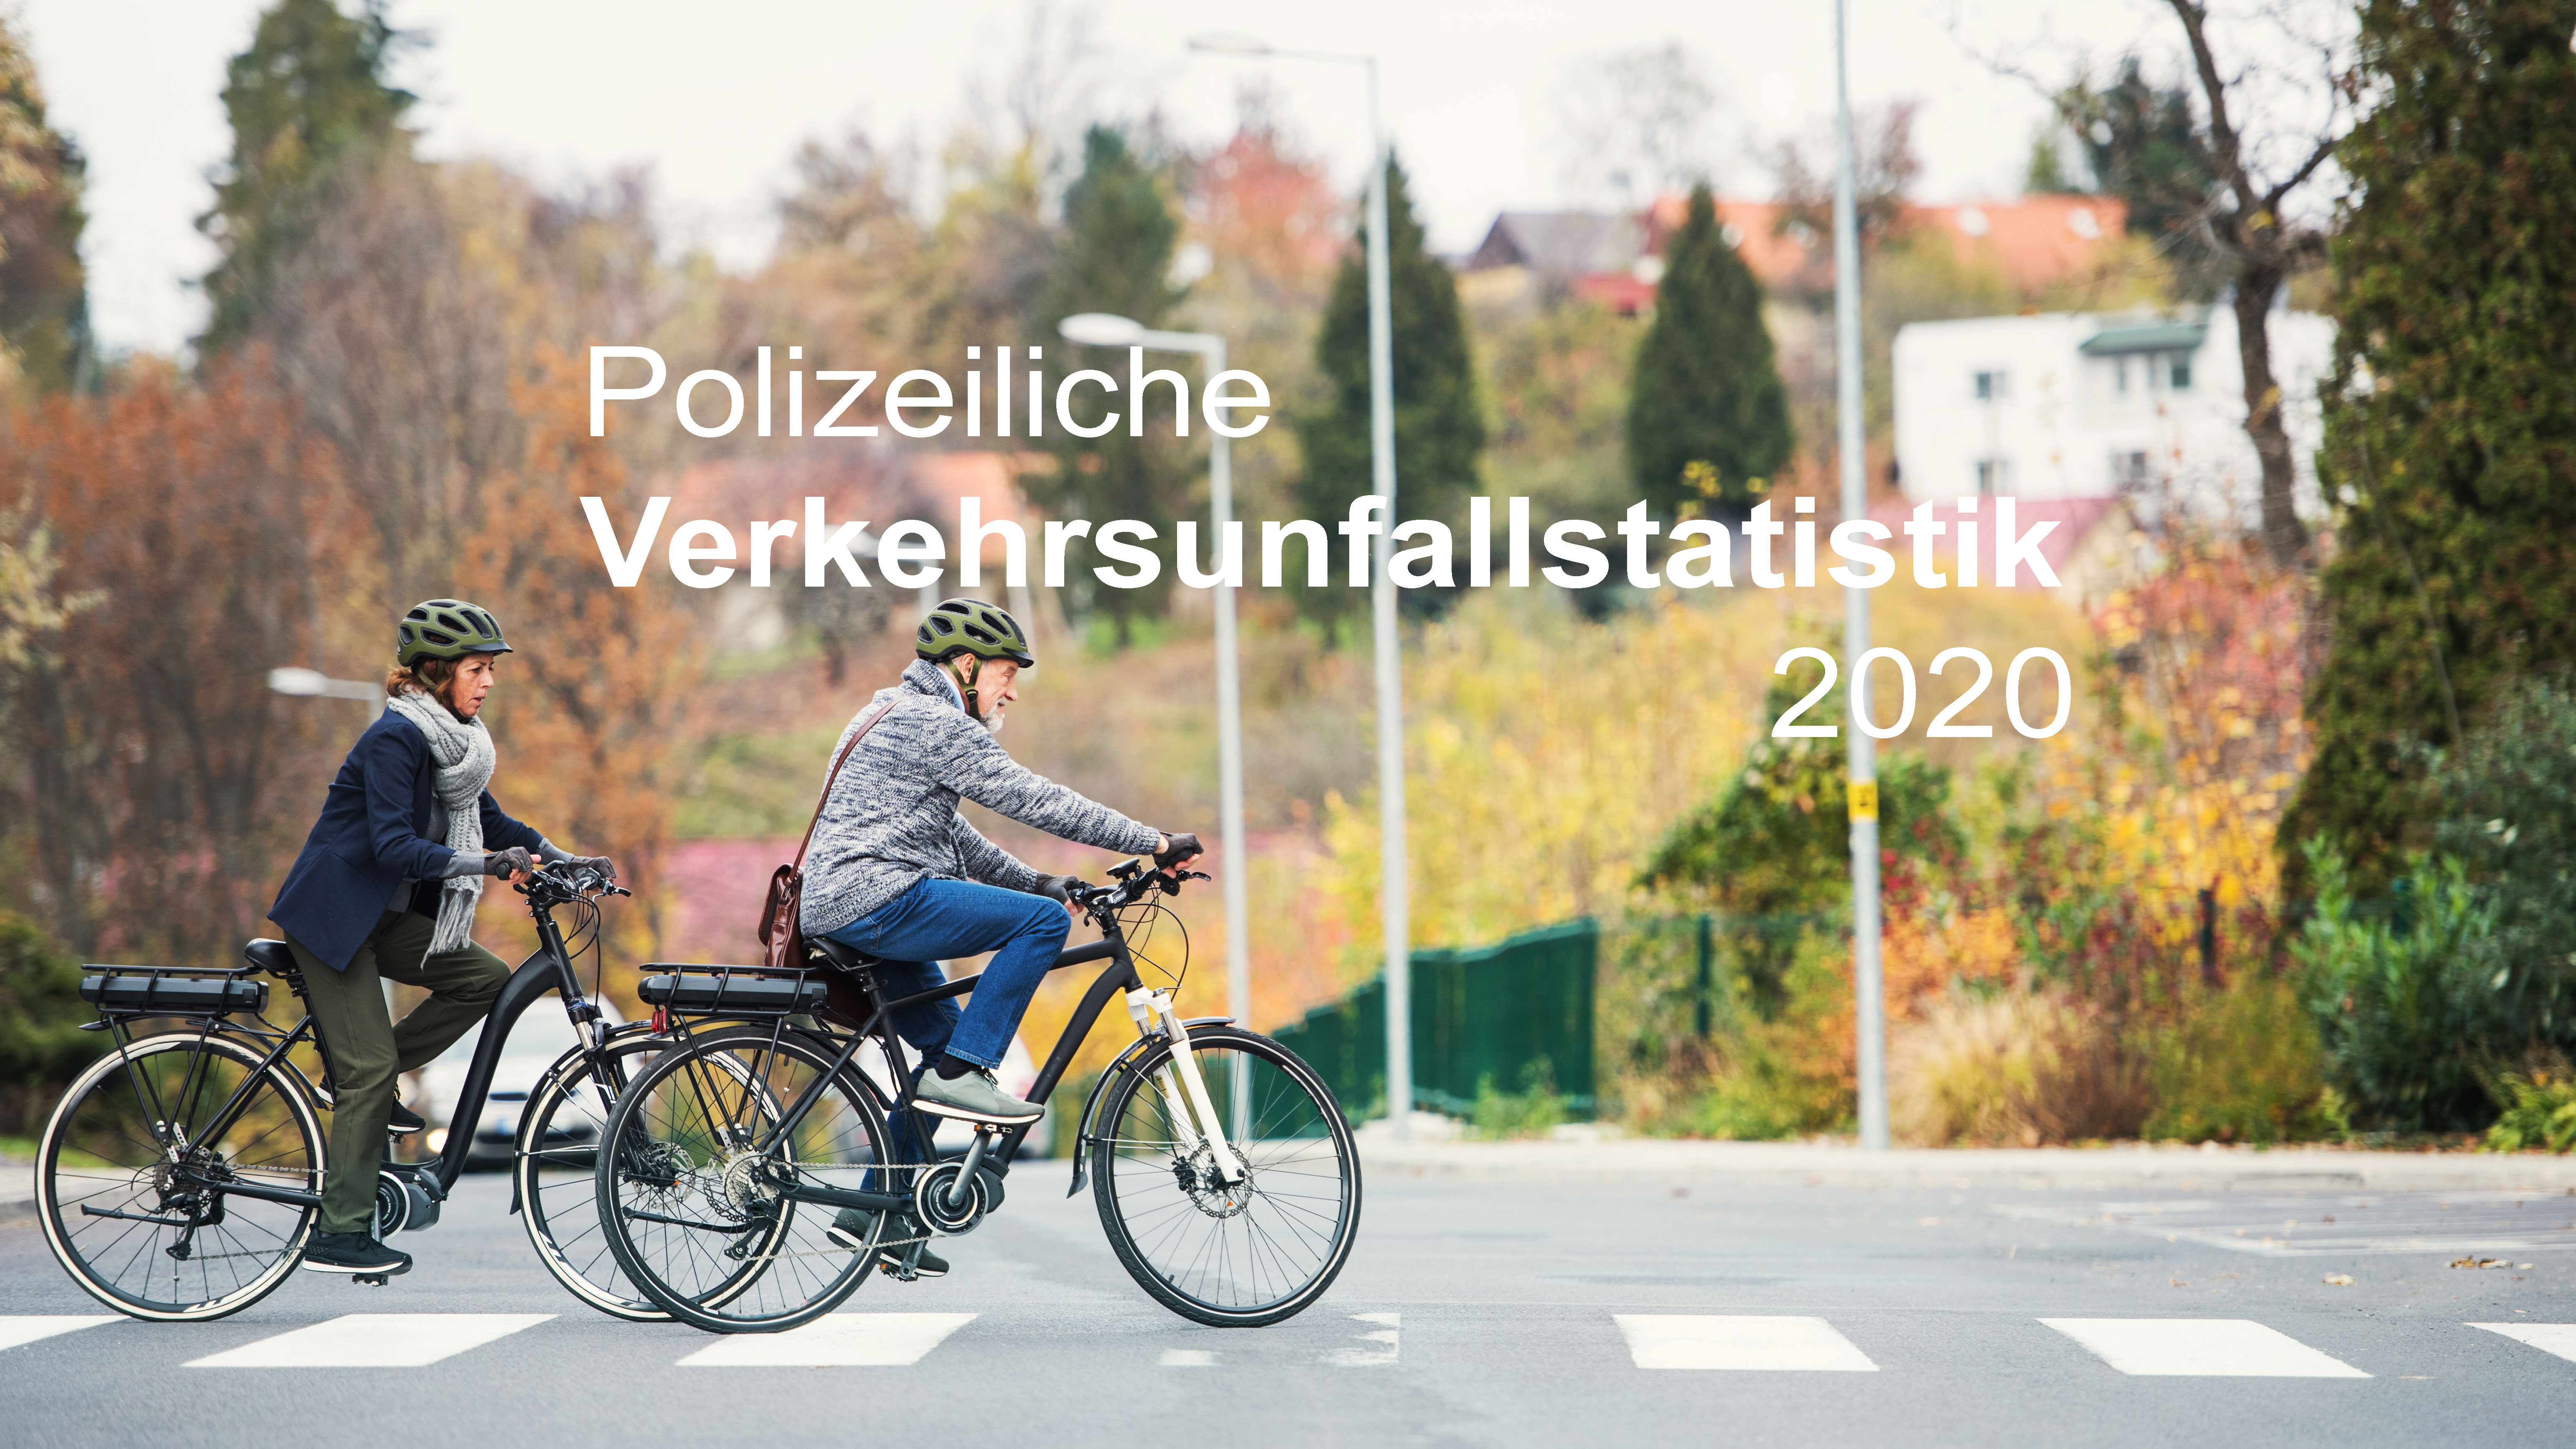 Polizeiliche Verkehrsunfallstatistik 2020